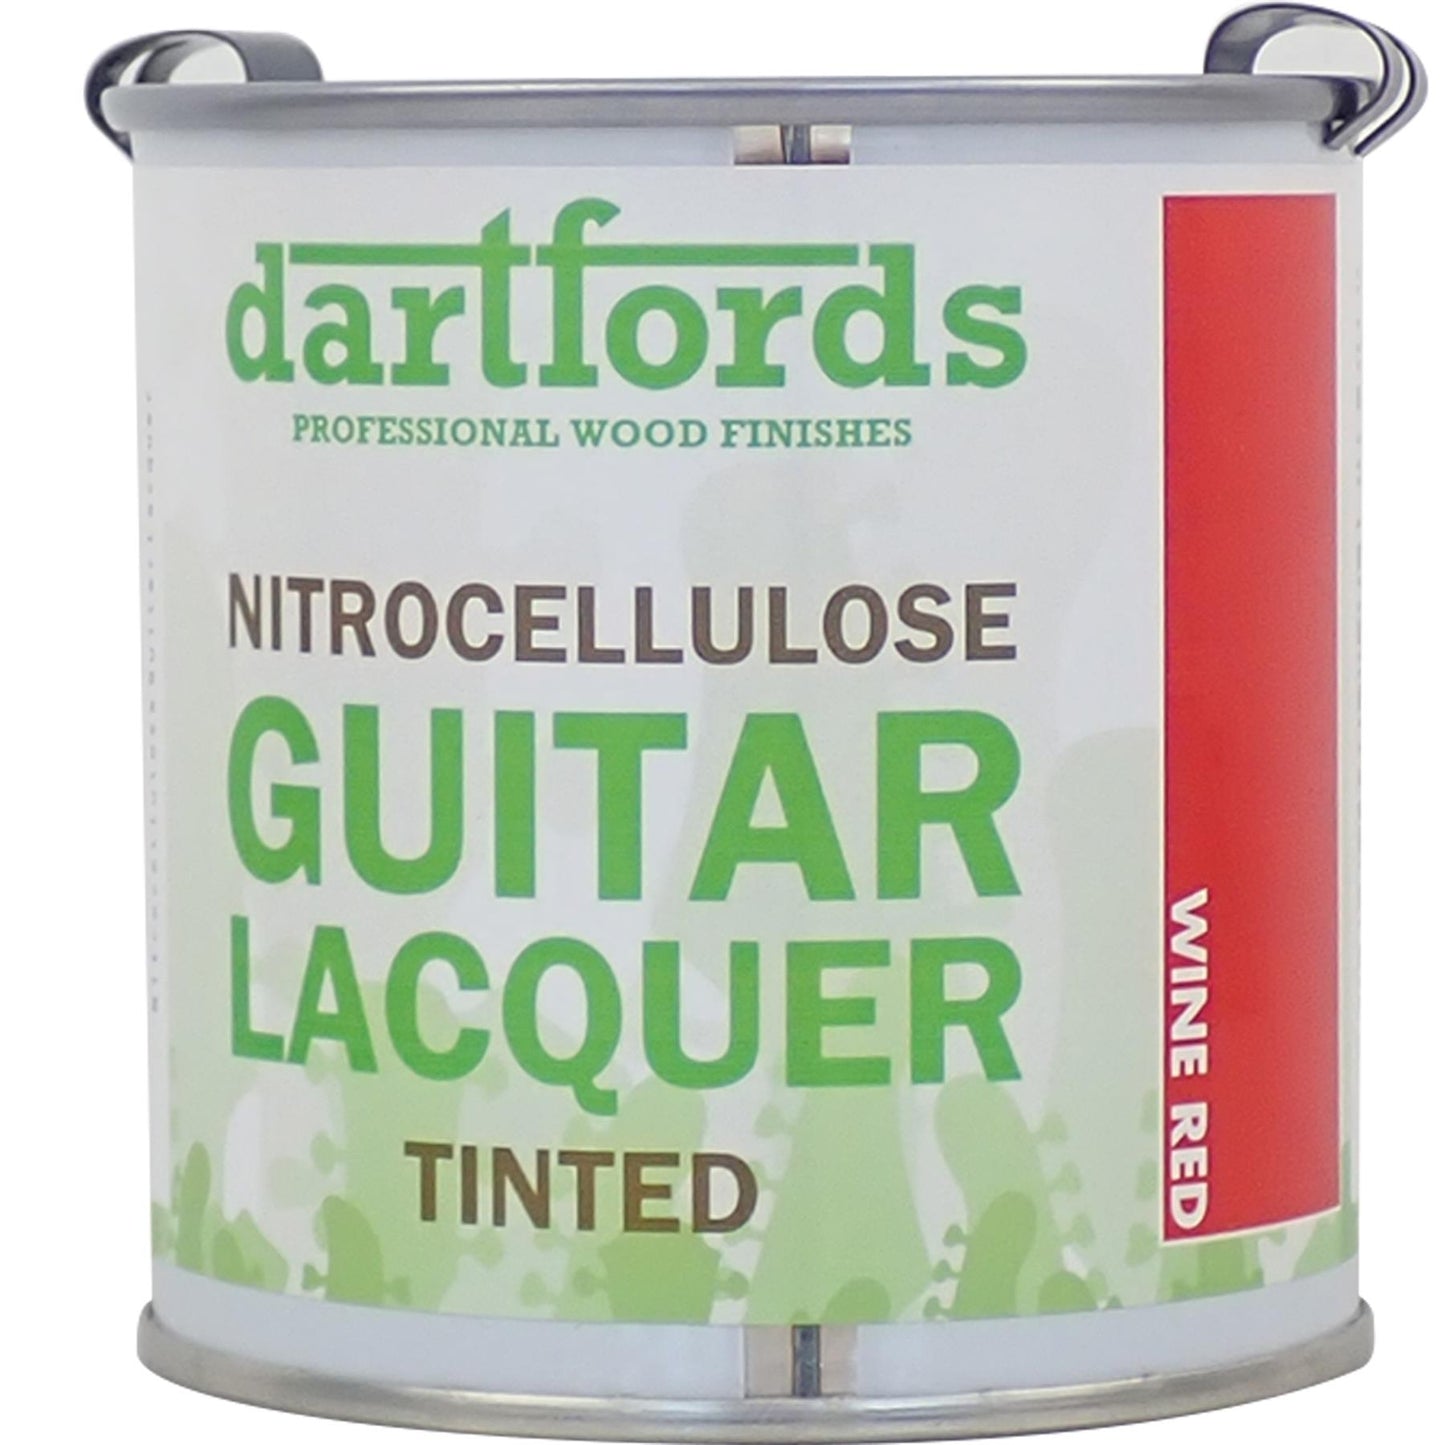 dartfords Wine Red Nitrocellulose Guitar Lacquer - 230ml Tin